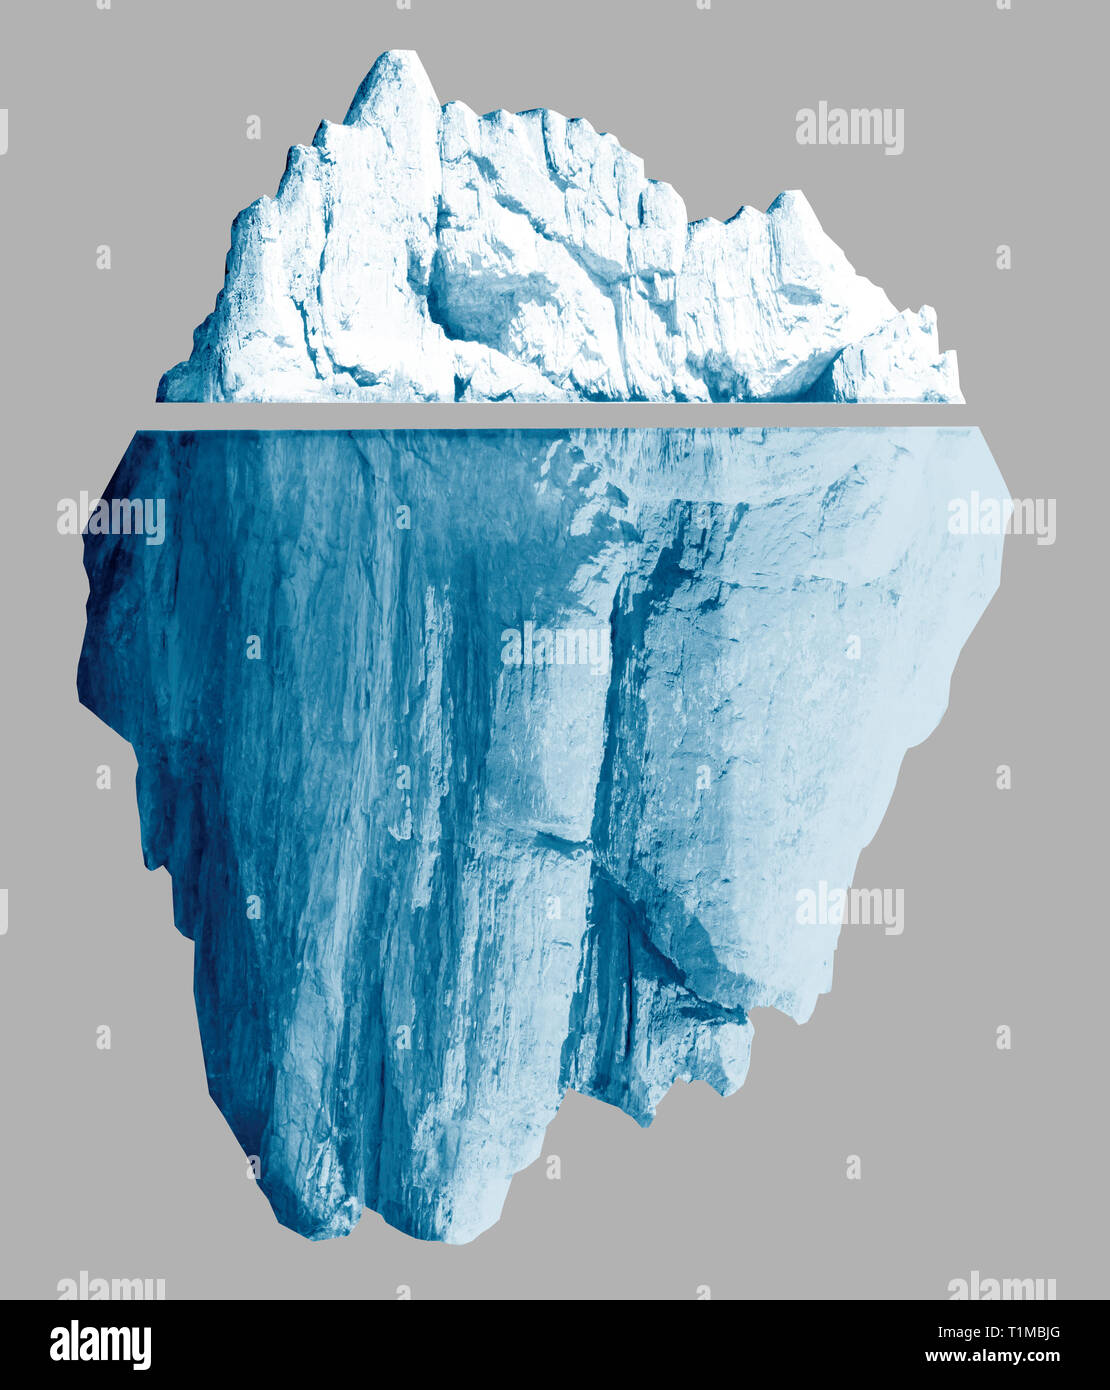 Eisberg isoliert mit Beschneidungspfaden enthalten 3 Abbildung d Stockfoto